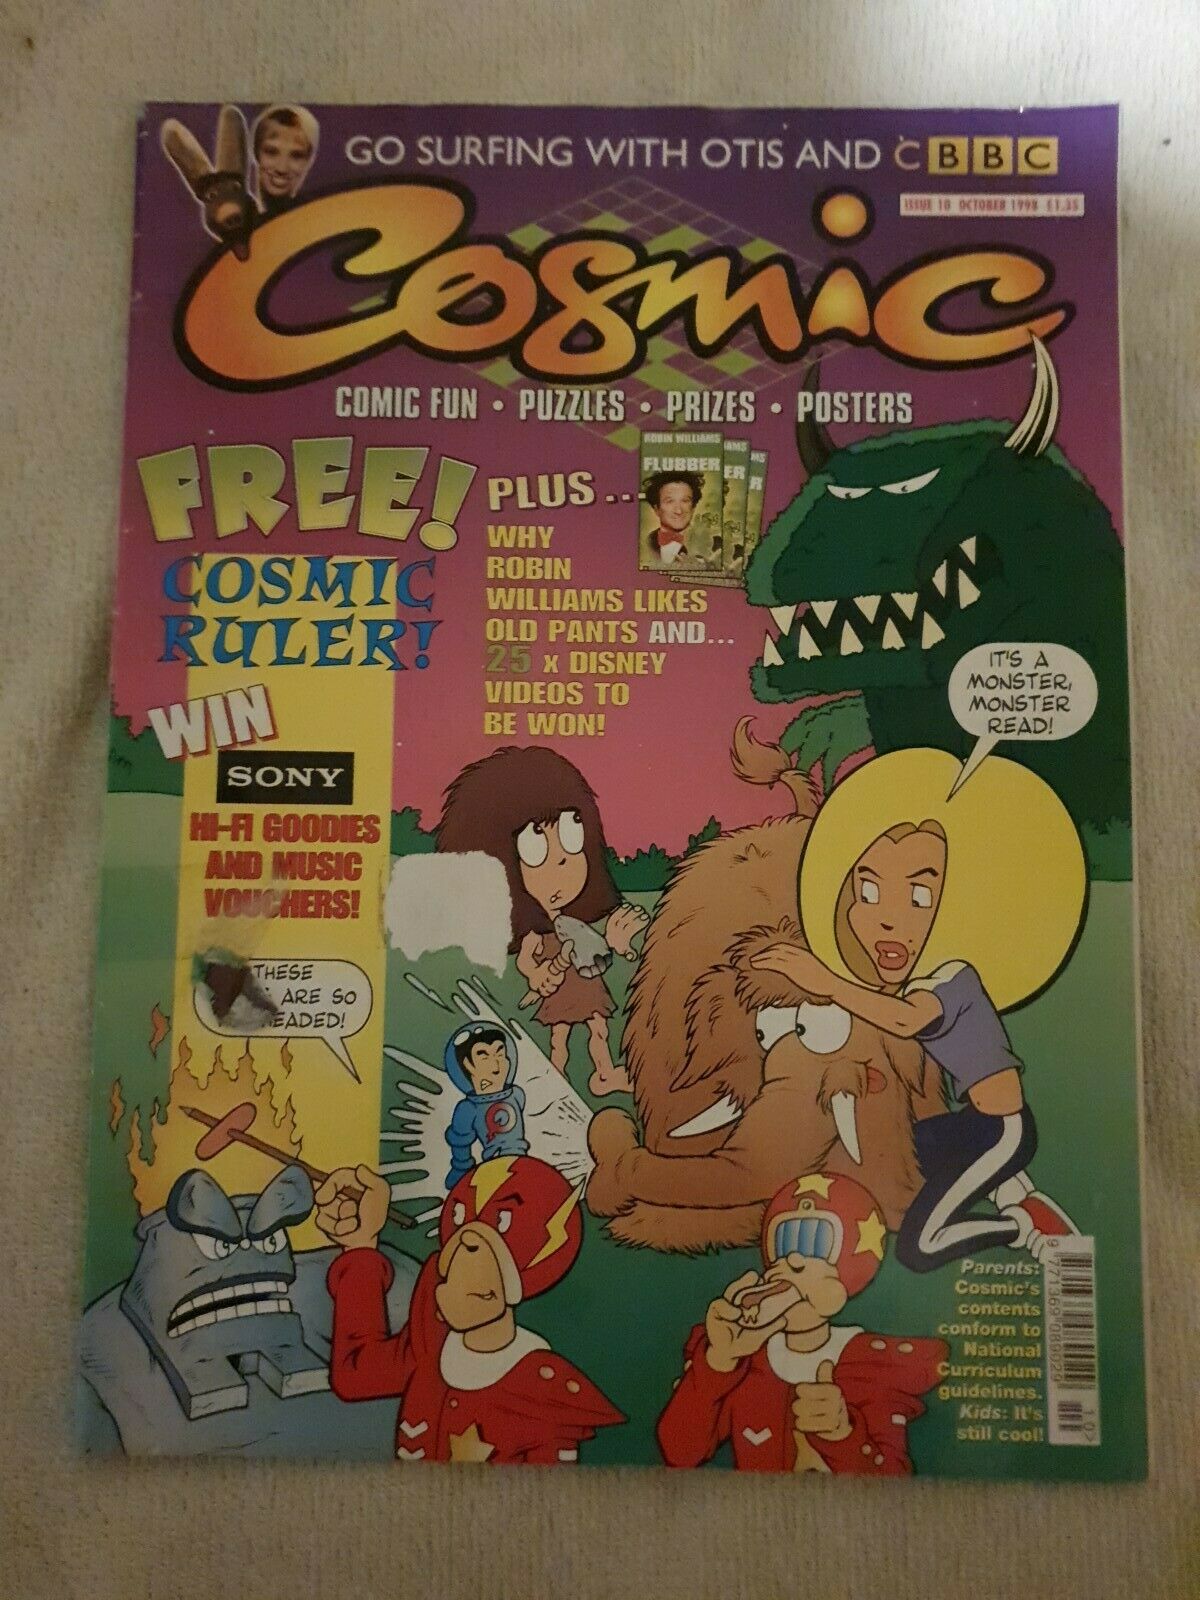 Cosmic Volume 2, No. 10, October 1998